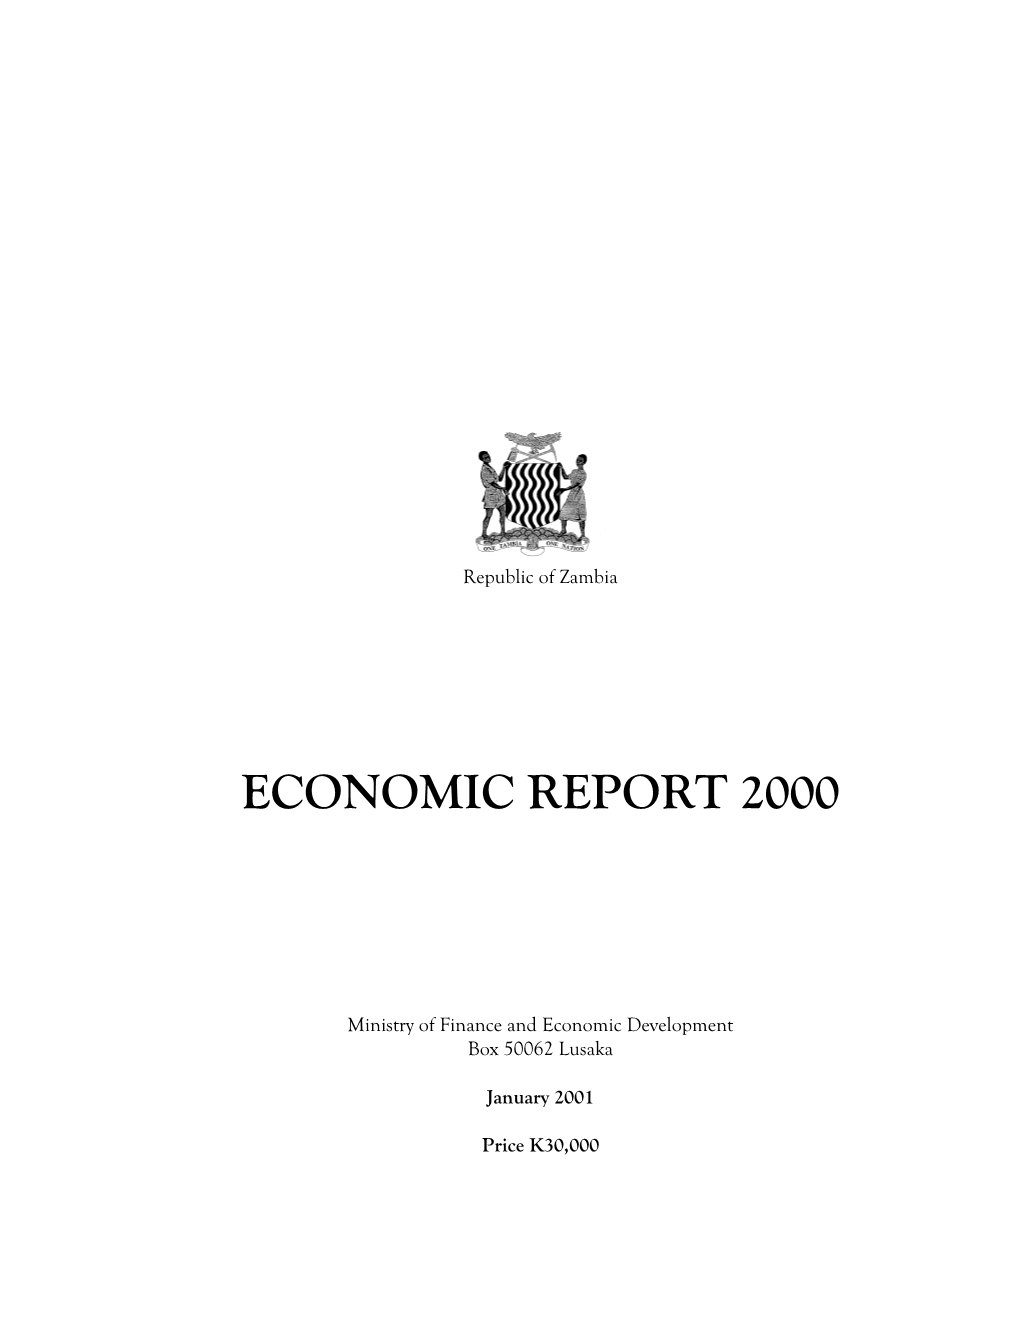 Economic Report 2000